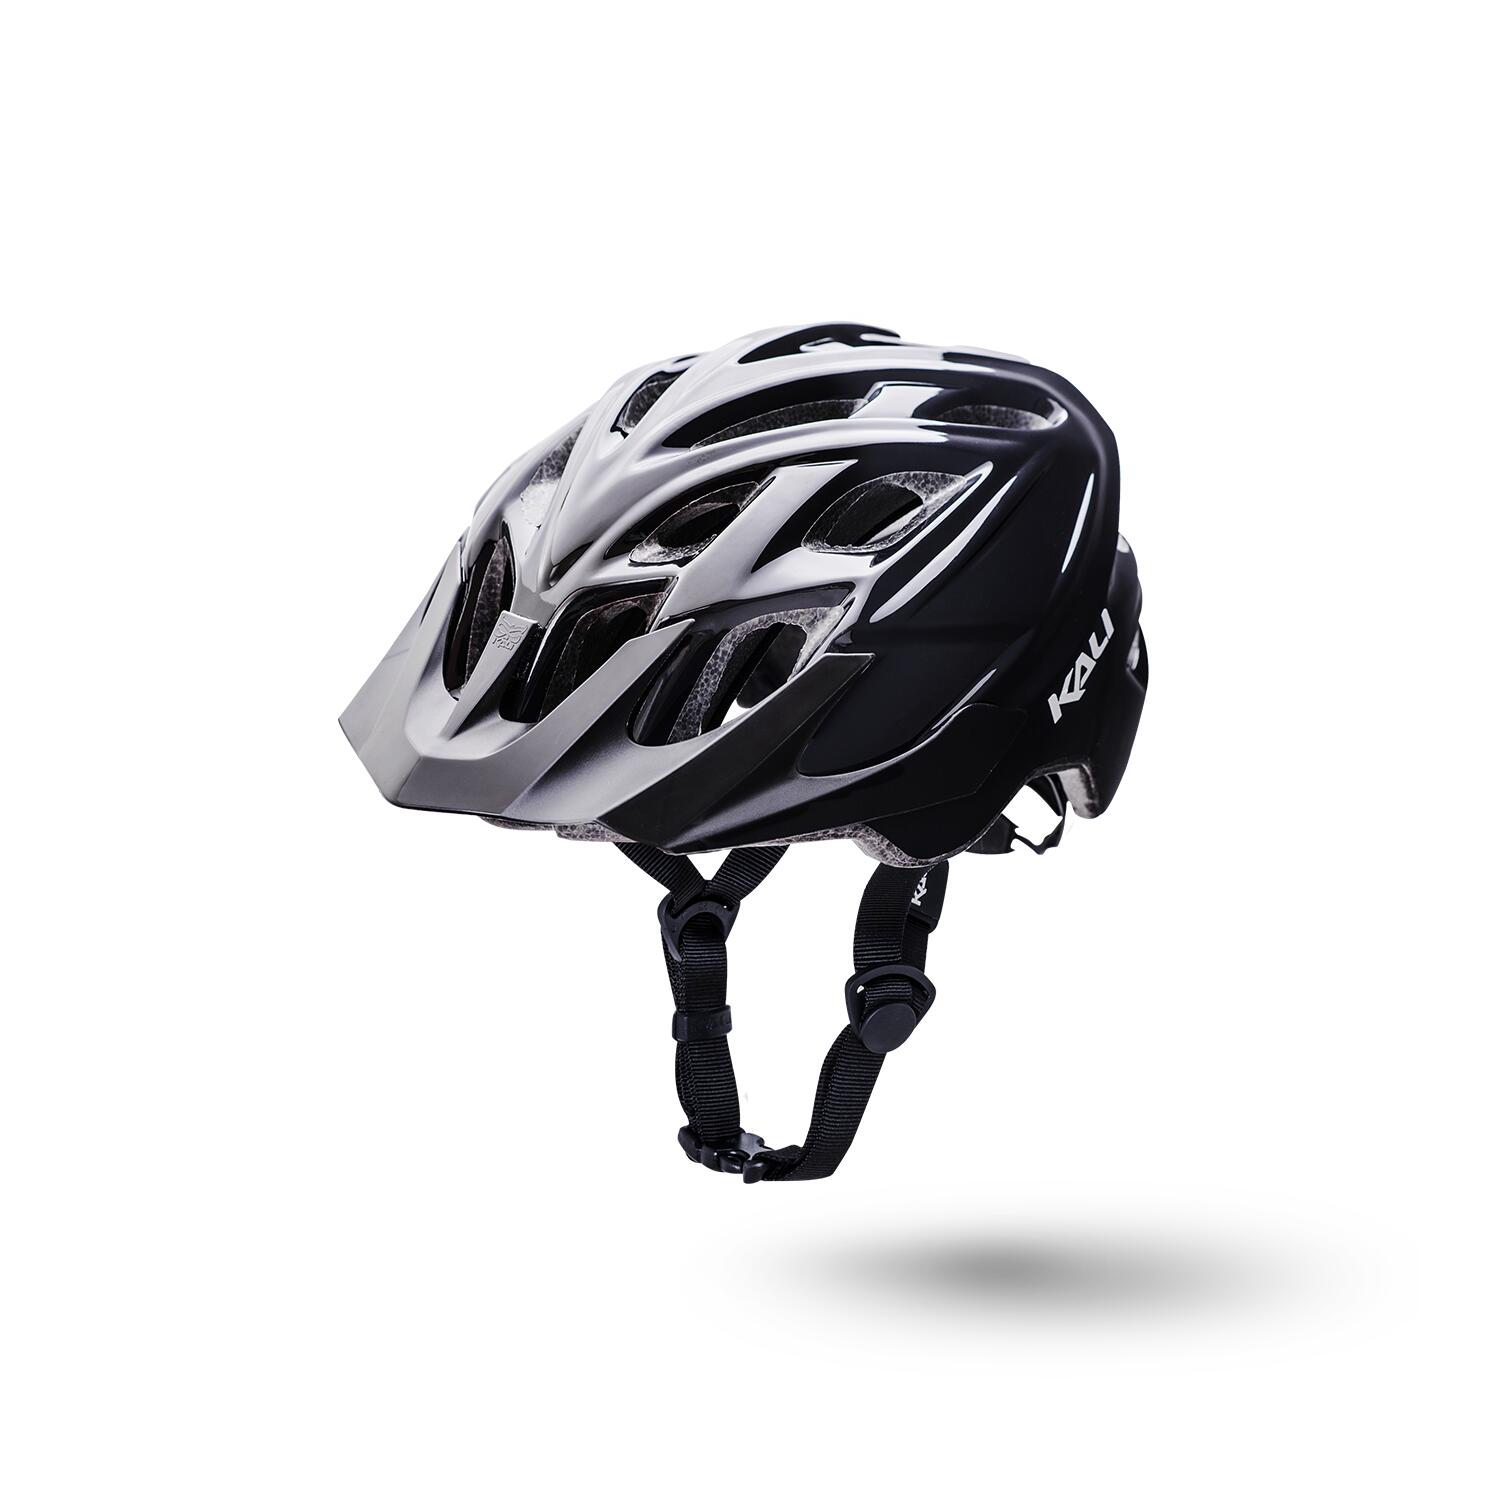 KALI Kali Chakra Solo Trail Helmet - Solid Black